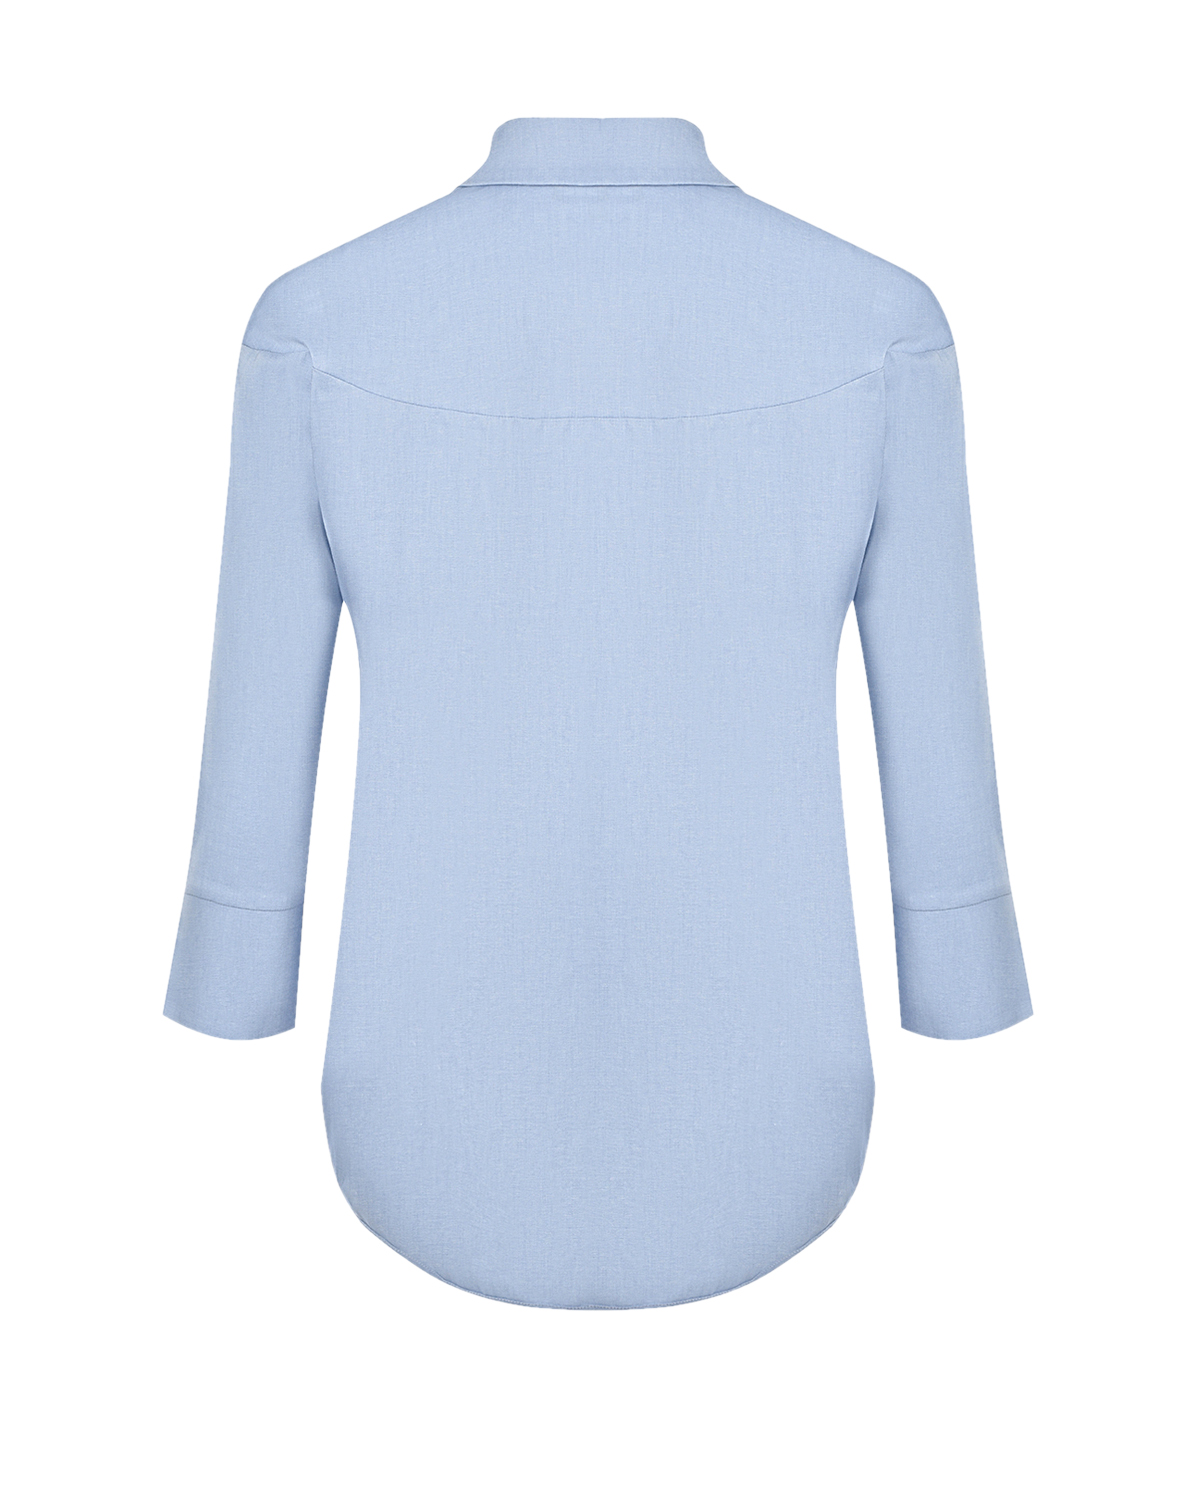 Синяя блуза с рукавами 3/4 Attesa, размер 38, цвет синий Синяя блуза с рукавами 3/4 Attesa - фото 2